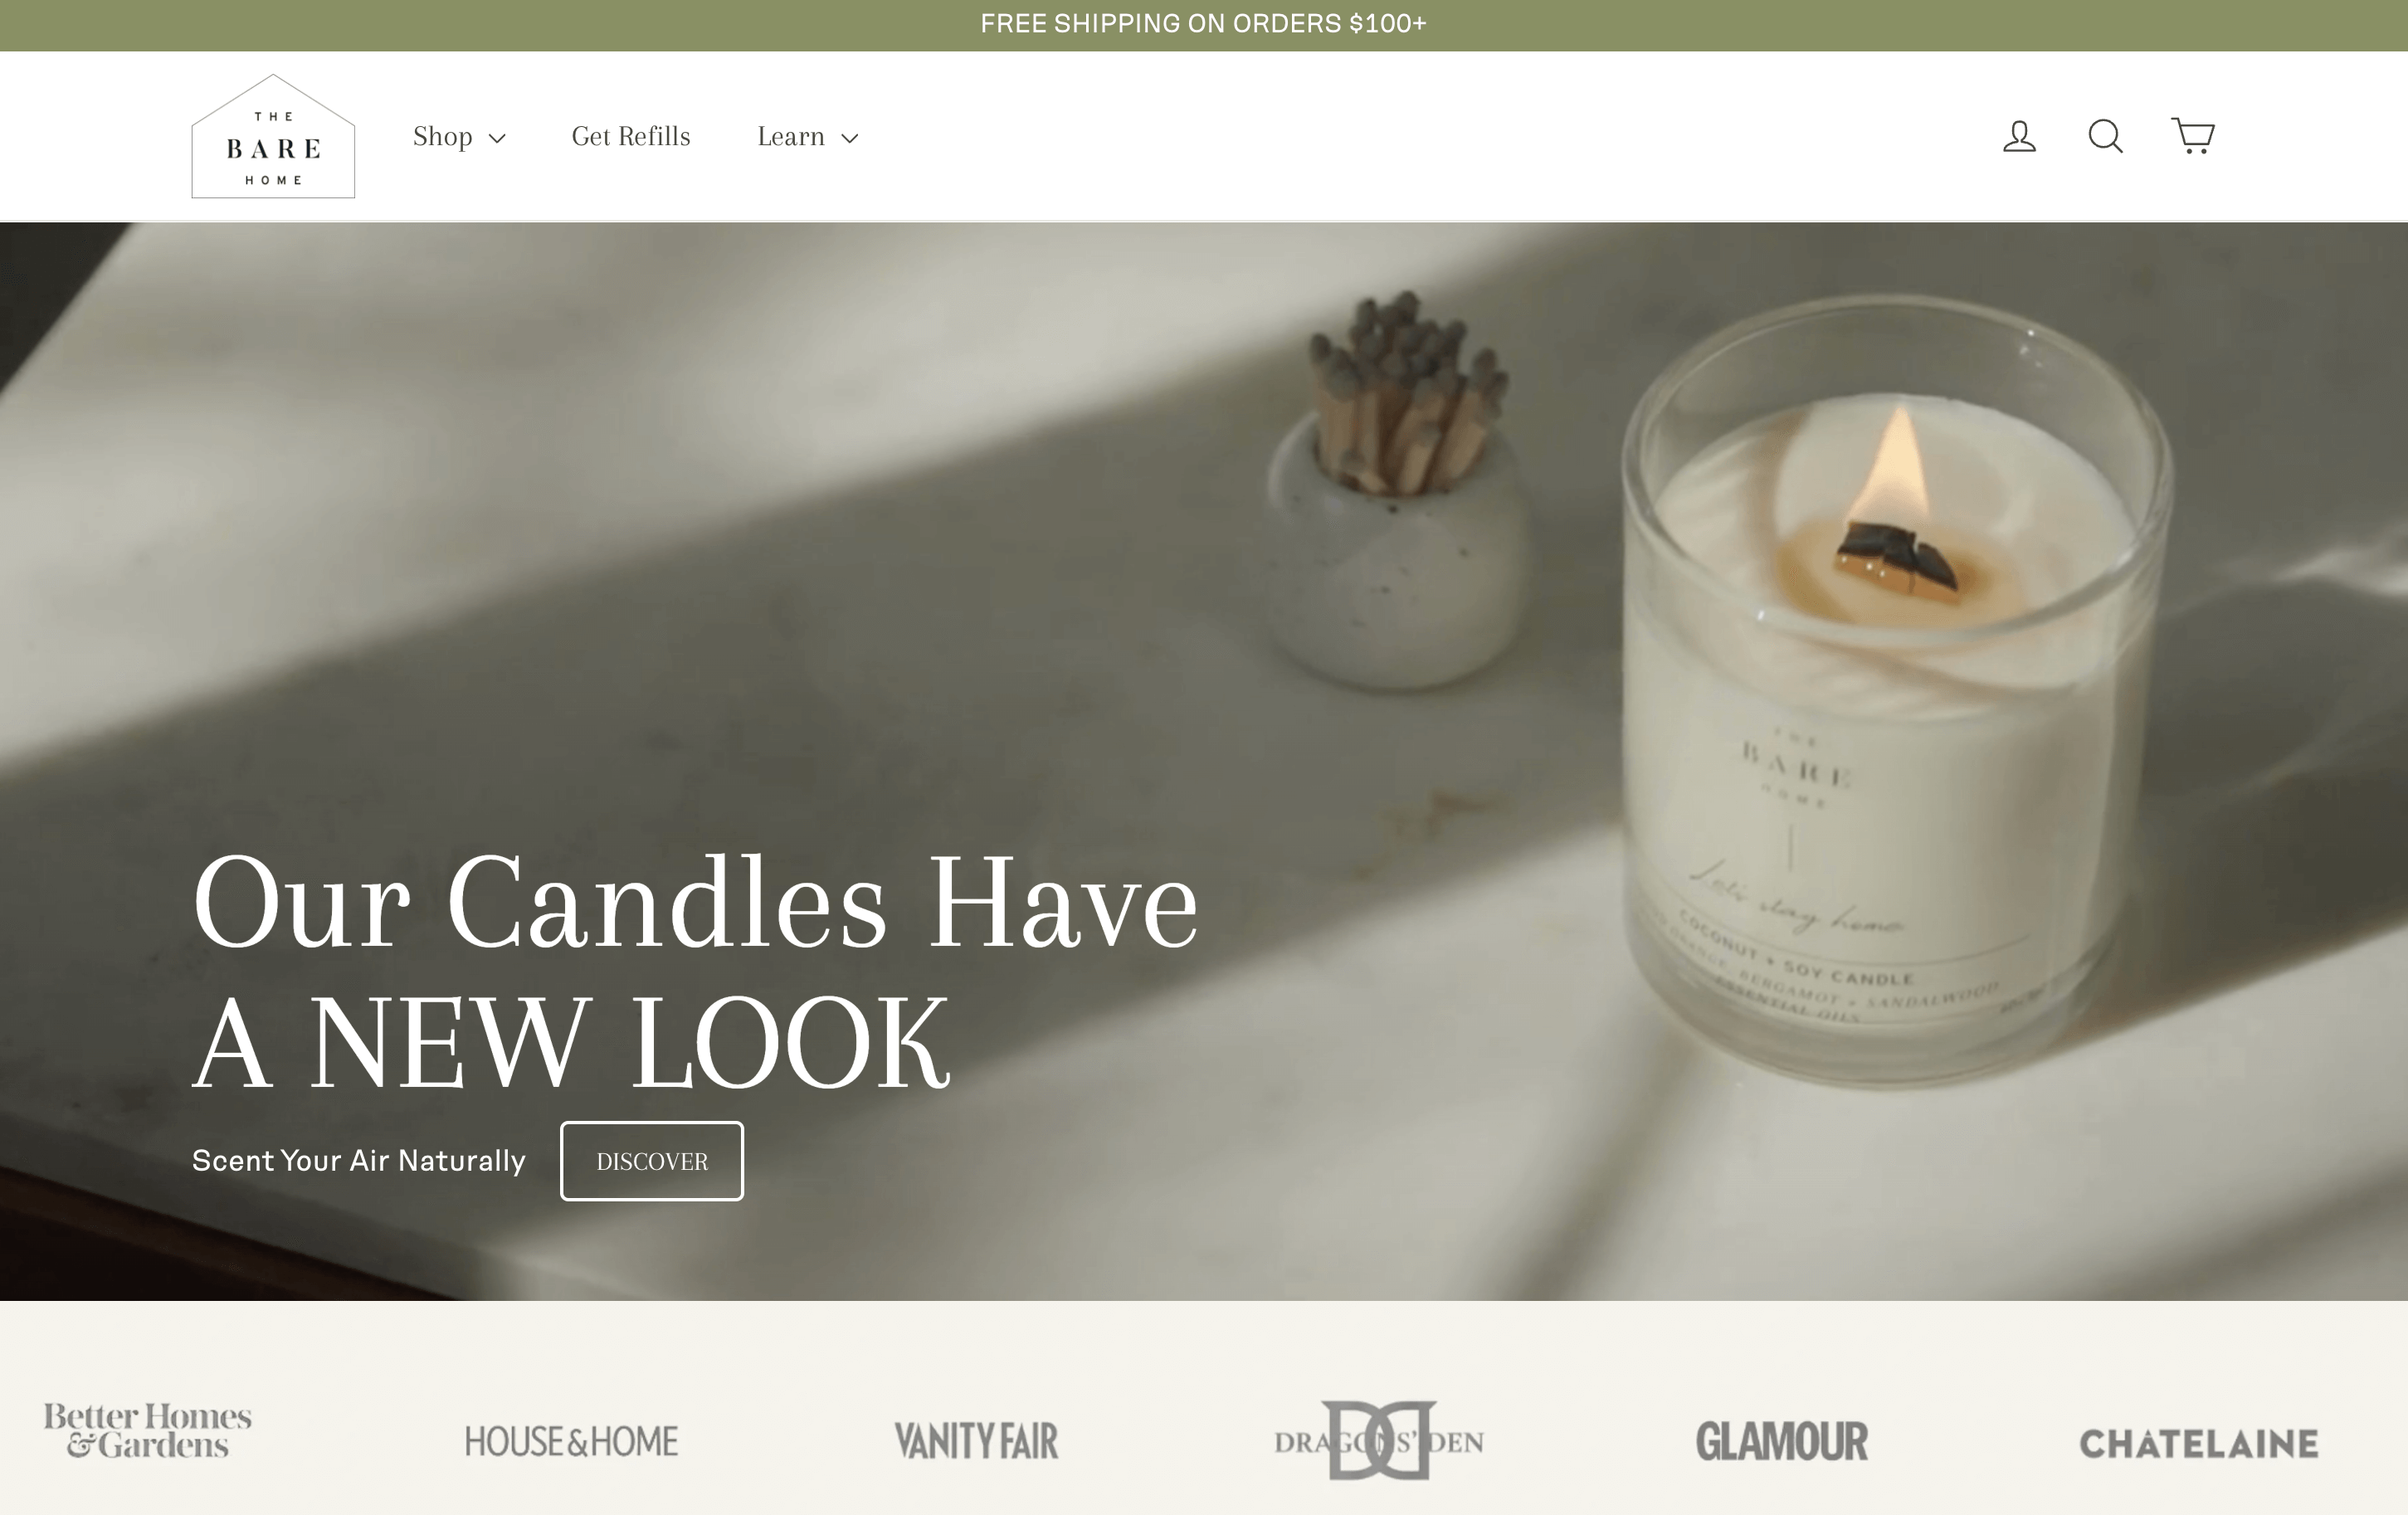 显示品牌蜡烛的主页屏幕截图。